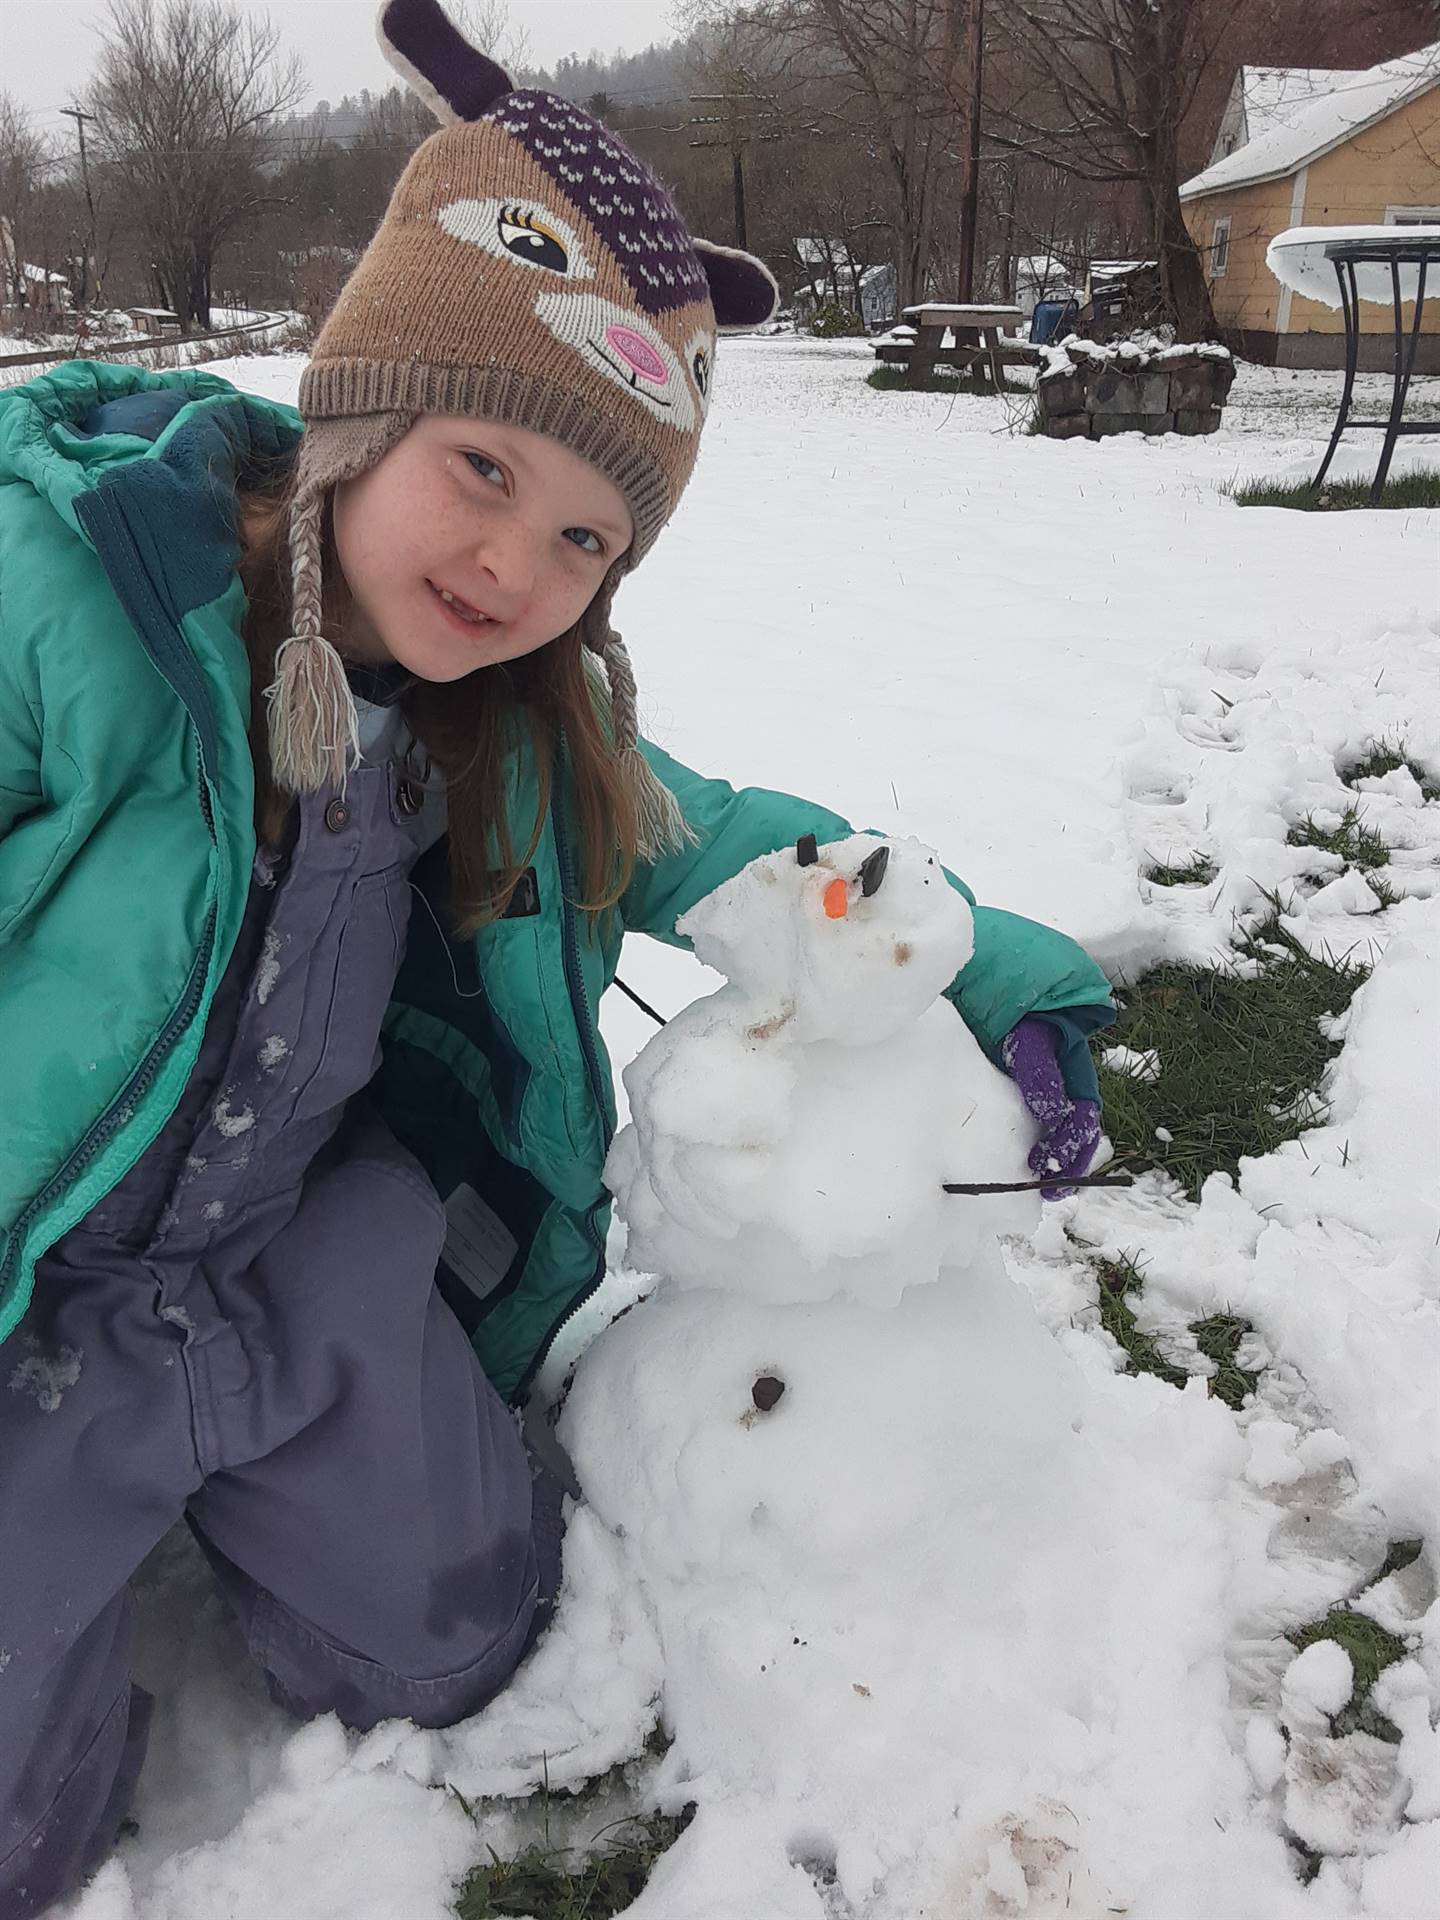 Student building snowman.